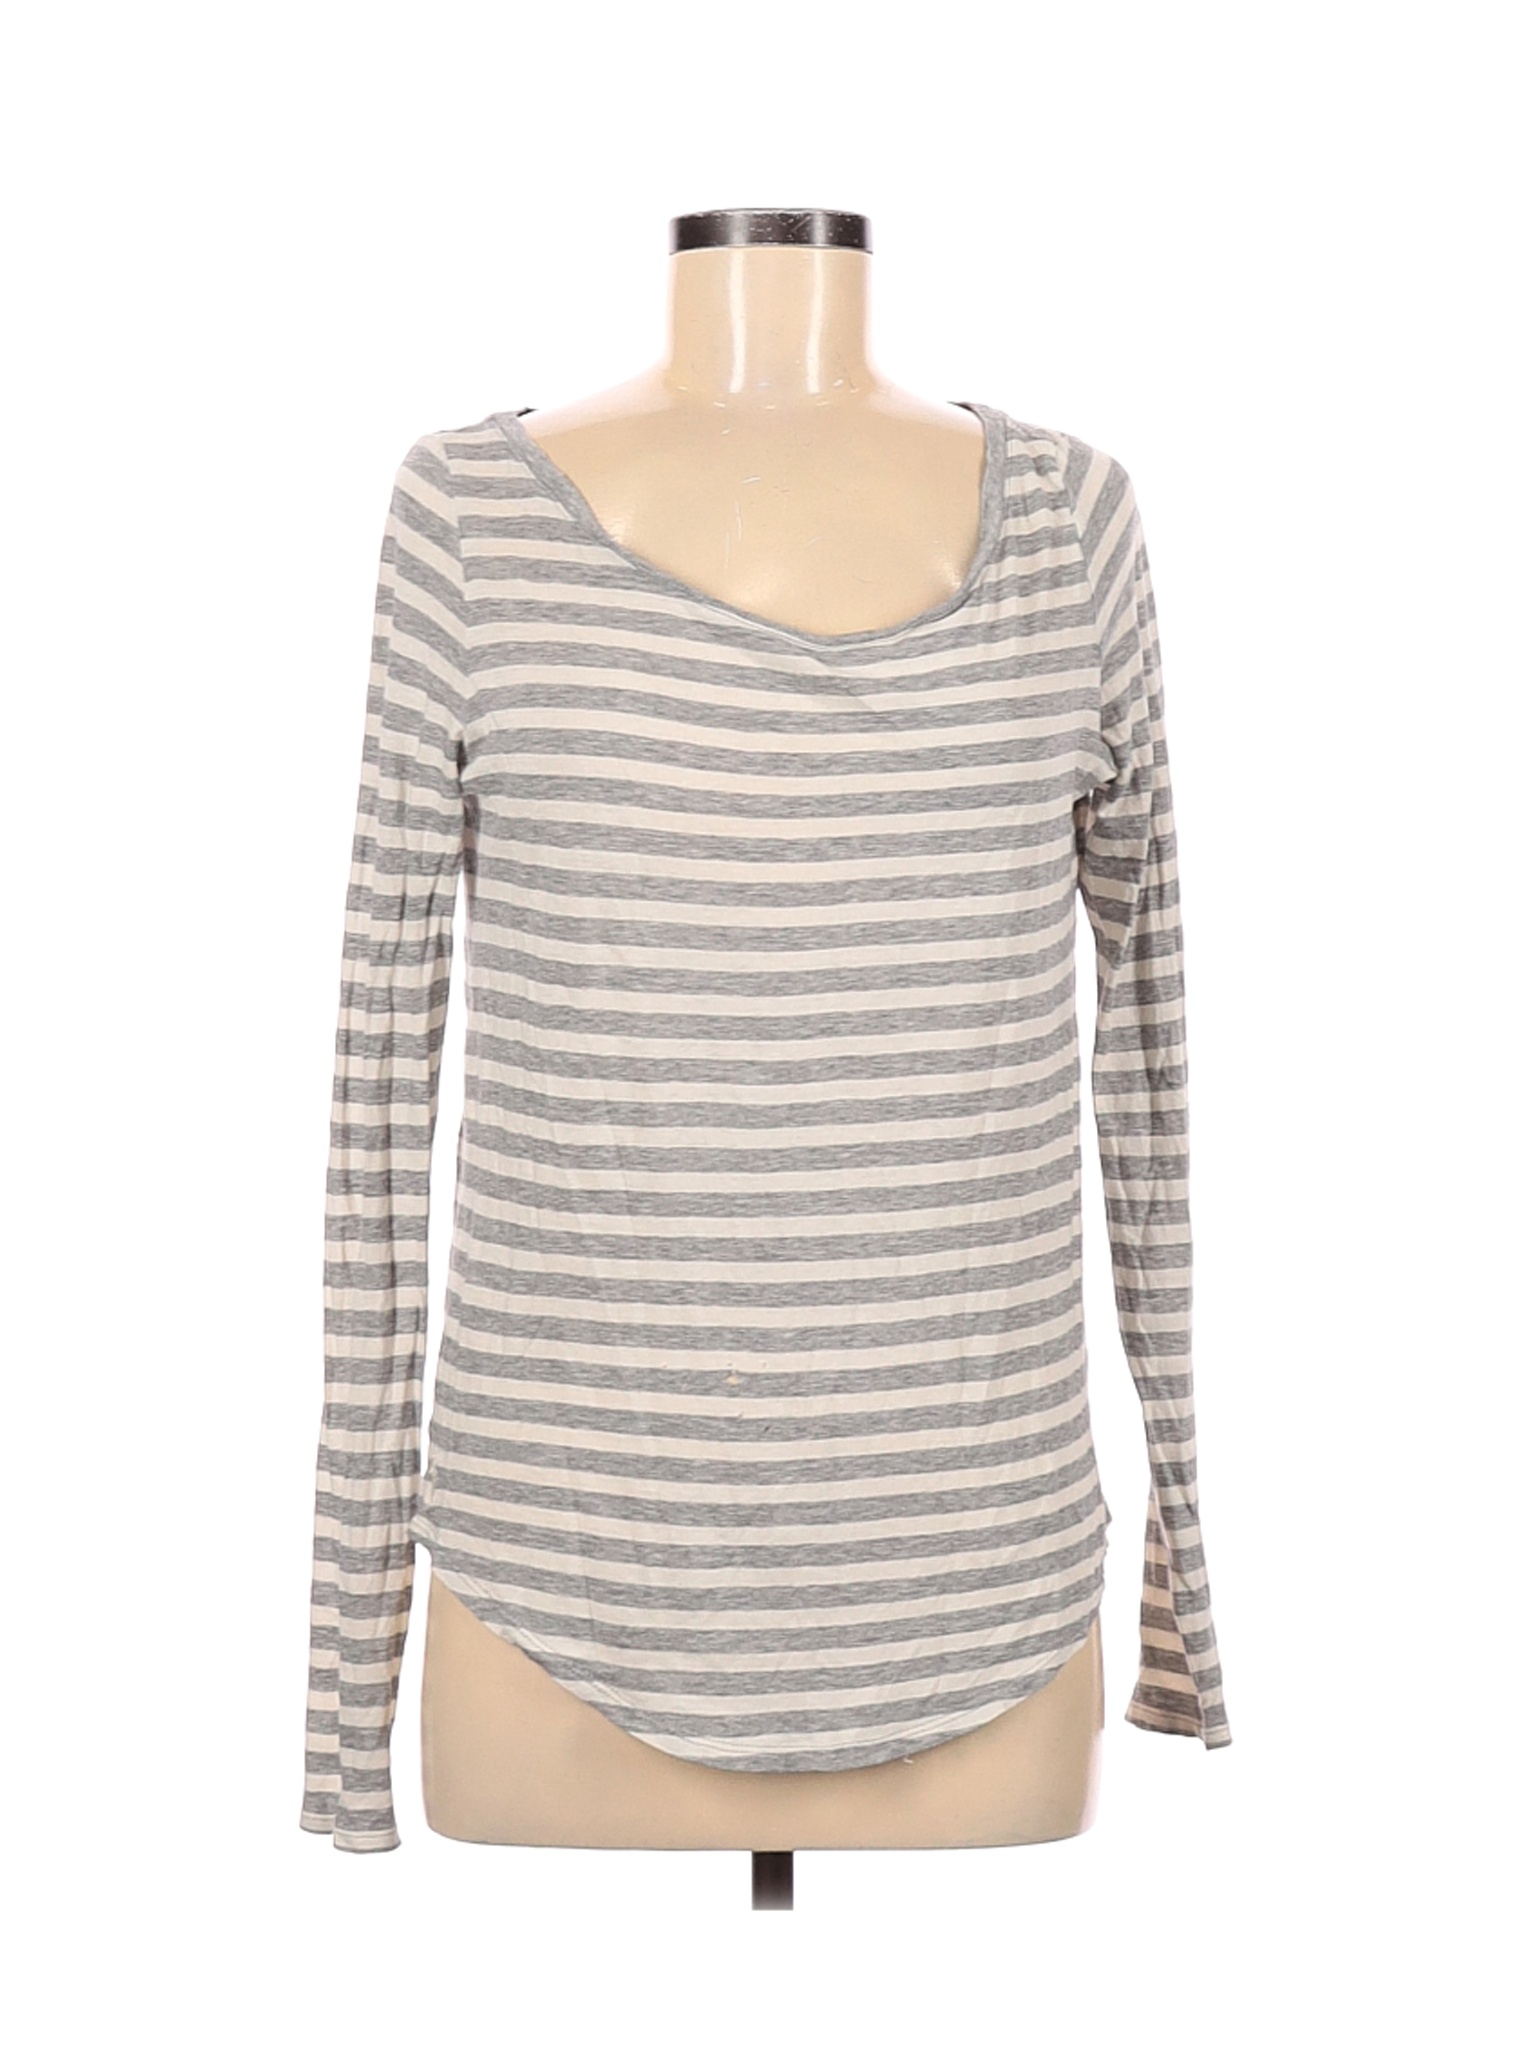 Polo by Ralph Lauren Women Gray Long Sleeve T-Shirt M | eBay